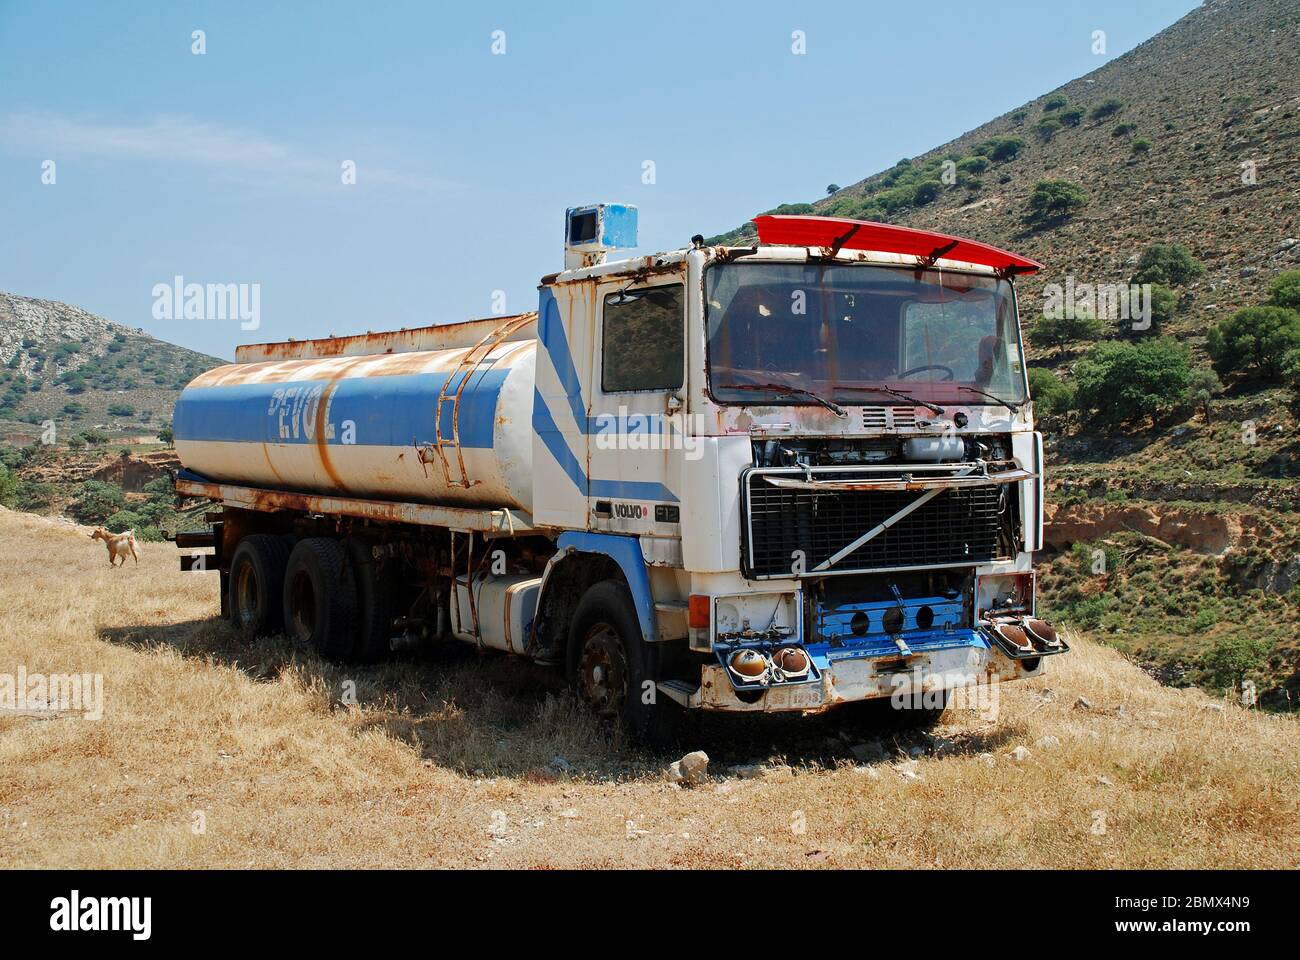 Un vecchio camion Revoil Petroleum cisterna carburante parcheggiato nelle colline dell'isola greca di Tilos il 19 giugno 2019. Con sede ad Atene, la società di carburanti è stata fondata nel 1982. Foto Stock